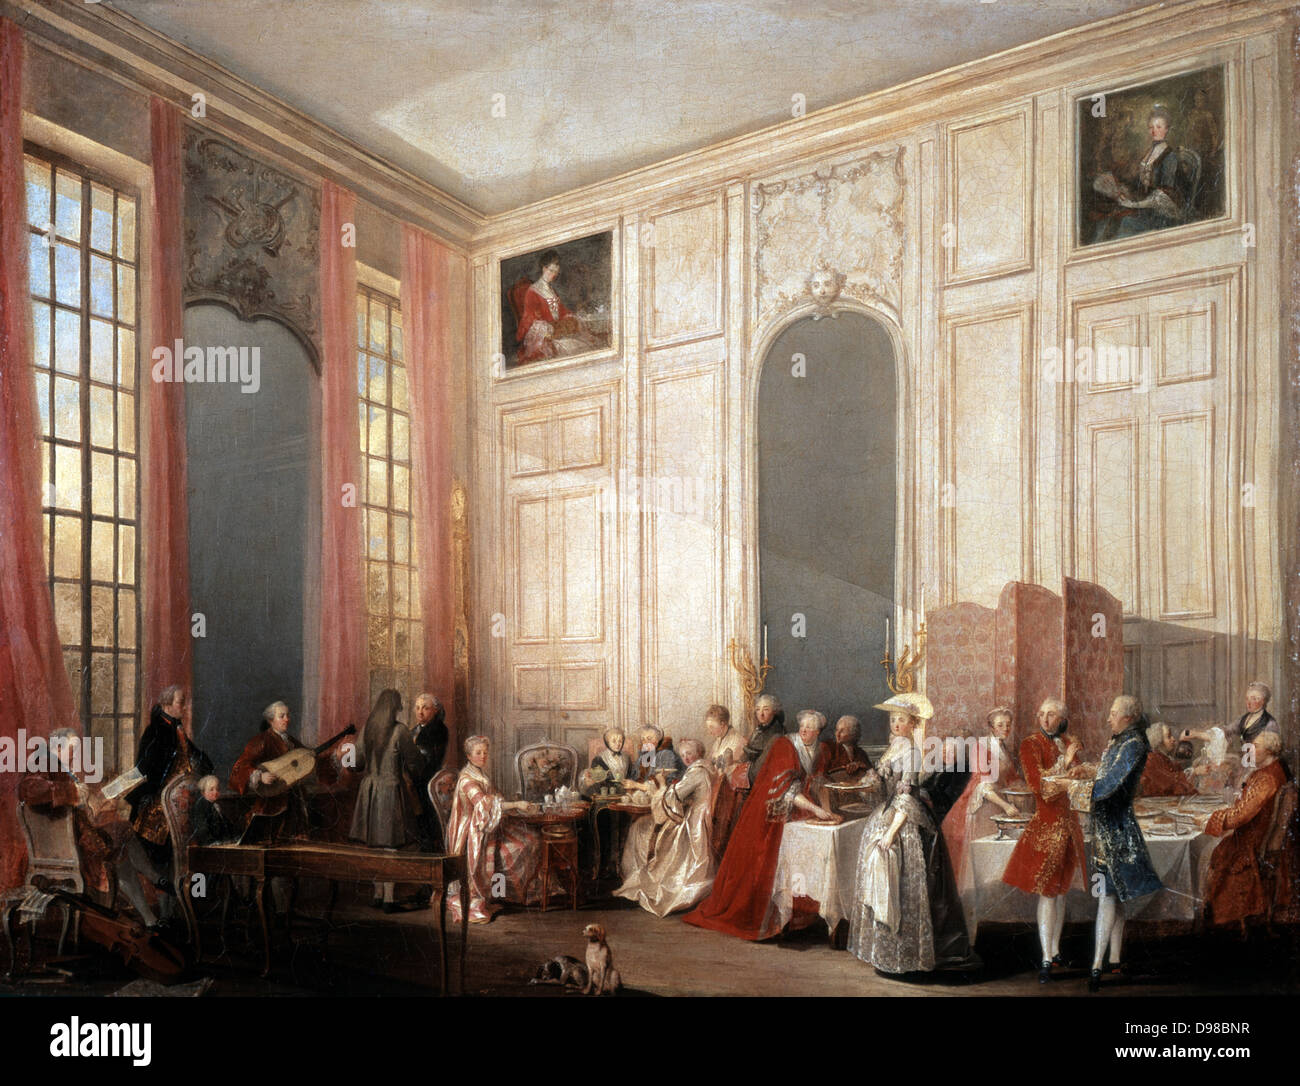 Le Der a l'Anglaise" (Tee in der englischen Mode in den Salons der vier Spiegel, Palast der Tempel, Paris, 1764). Auf der linken Seite der junge Mozart sitzt am Clavichord. Ollivier Michel, Barthelemy (1712-1784), französischer Maler. Stockfoto